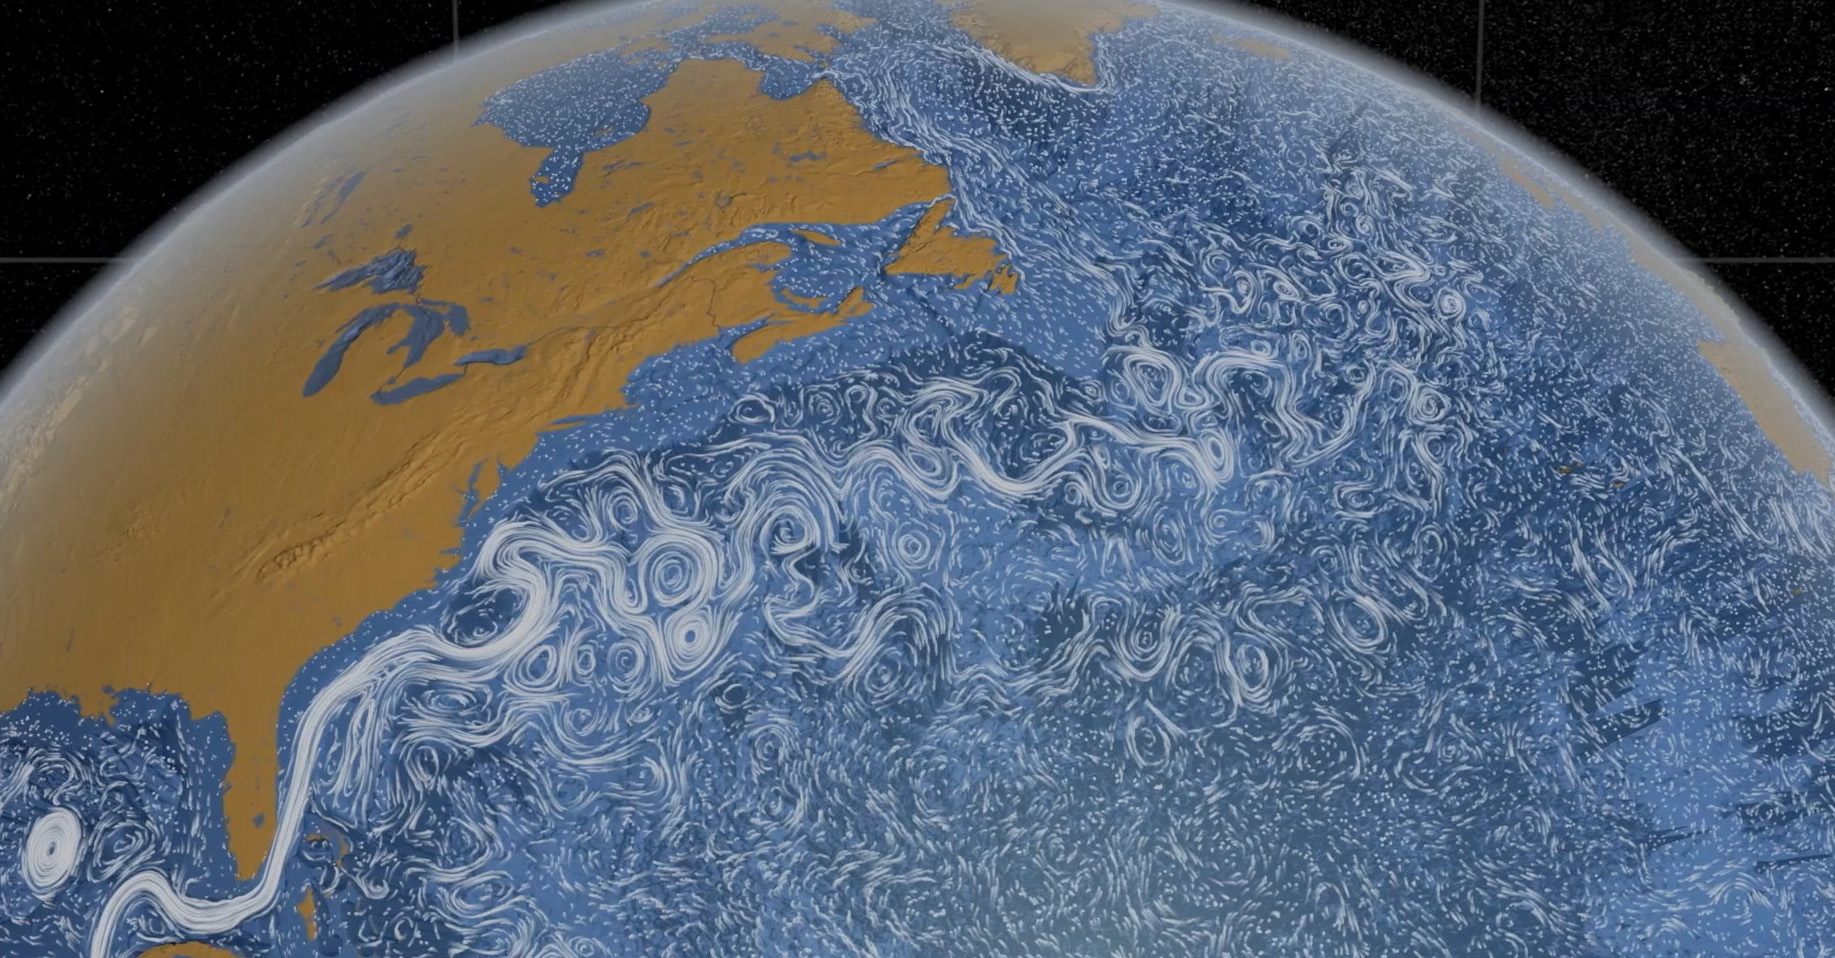 Las corrientes superficiales circulan en este modelo 3D de alta resolución de los océanos de la Tierra.